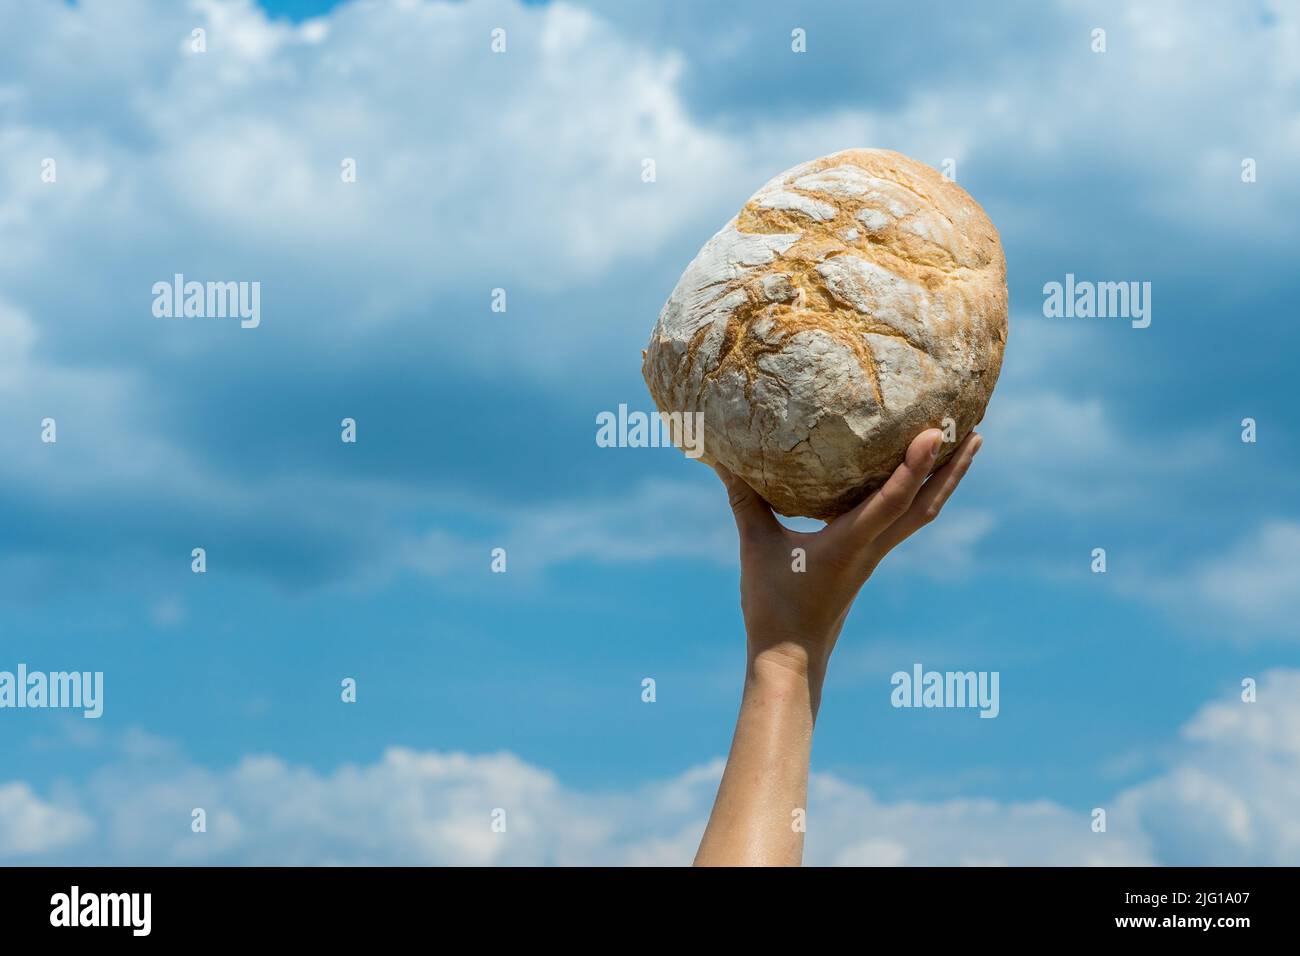 Les mains des femmes tenant le pain cuit maison au-dessus de sa tête sur un ciel bleu d'été. Concept de sécurité alimentaire mondiale. Banque D'Images